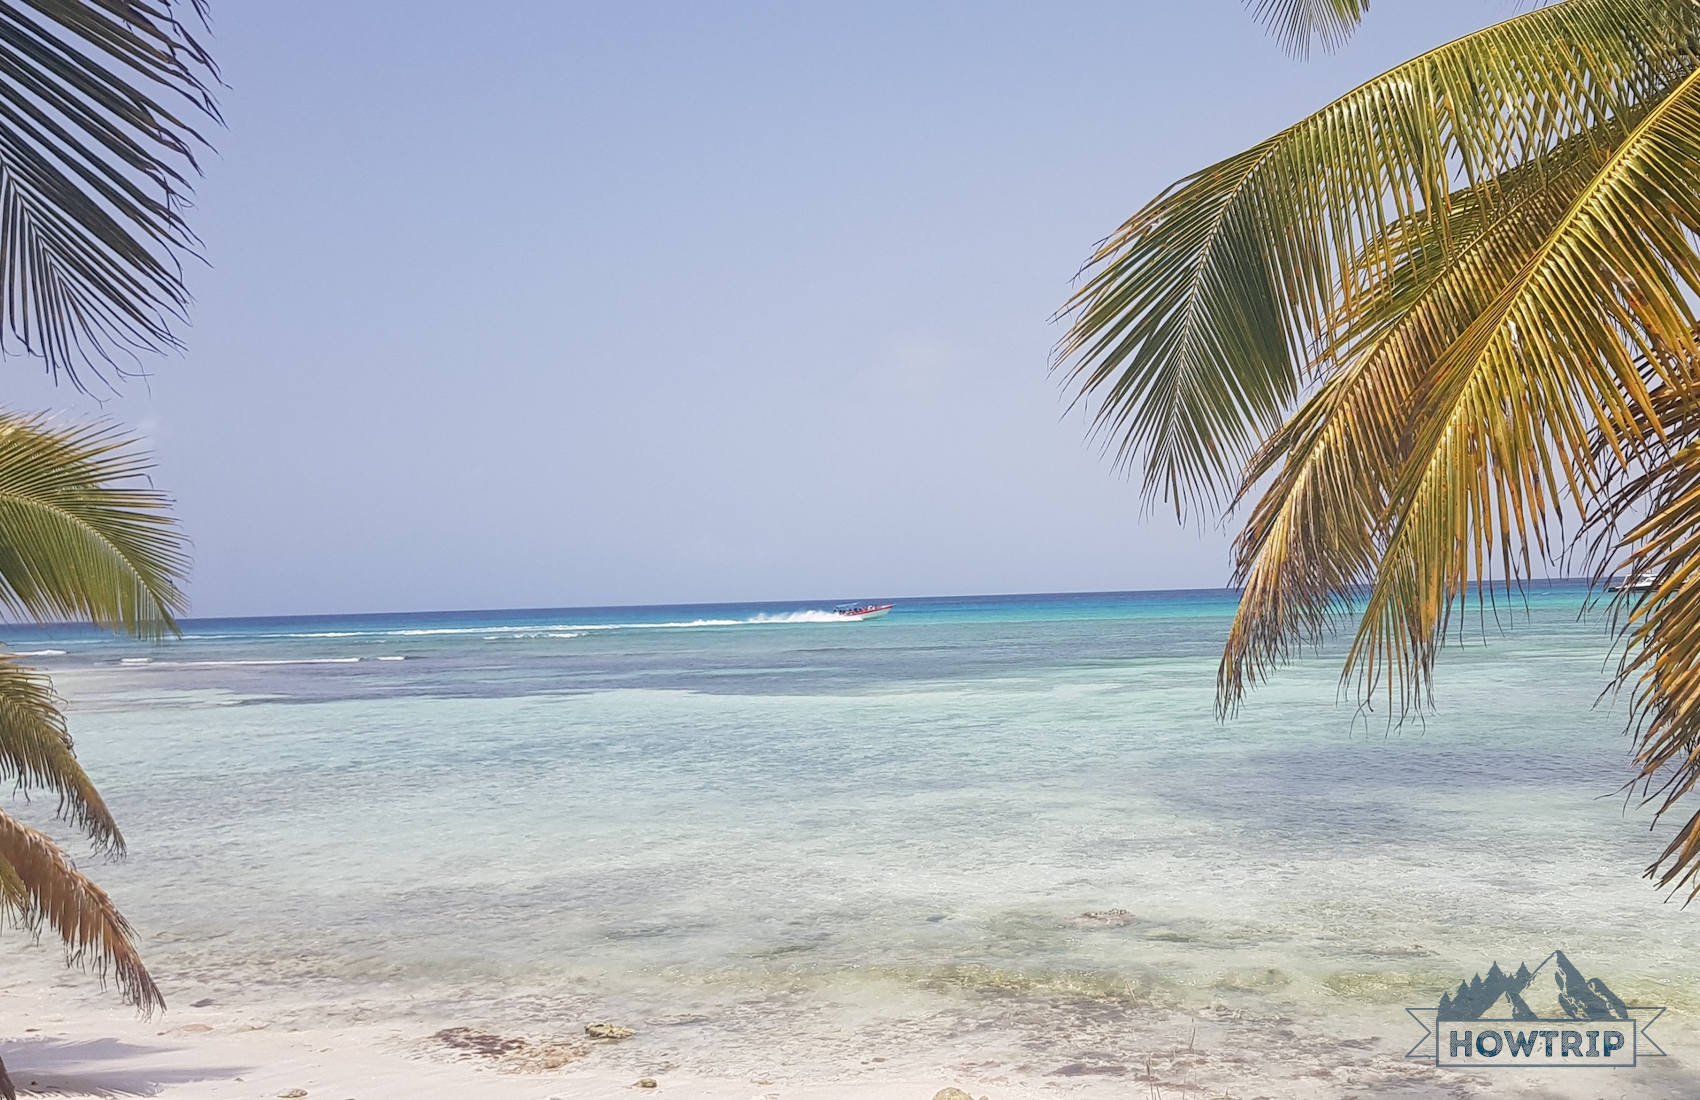 Сезон для отдыха в Доминикане - 2022: когда лучше ехать?